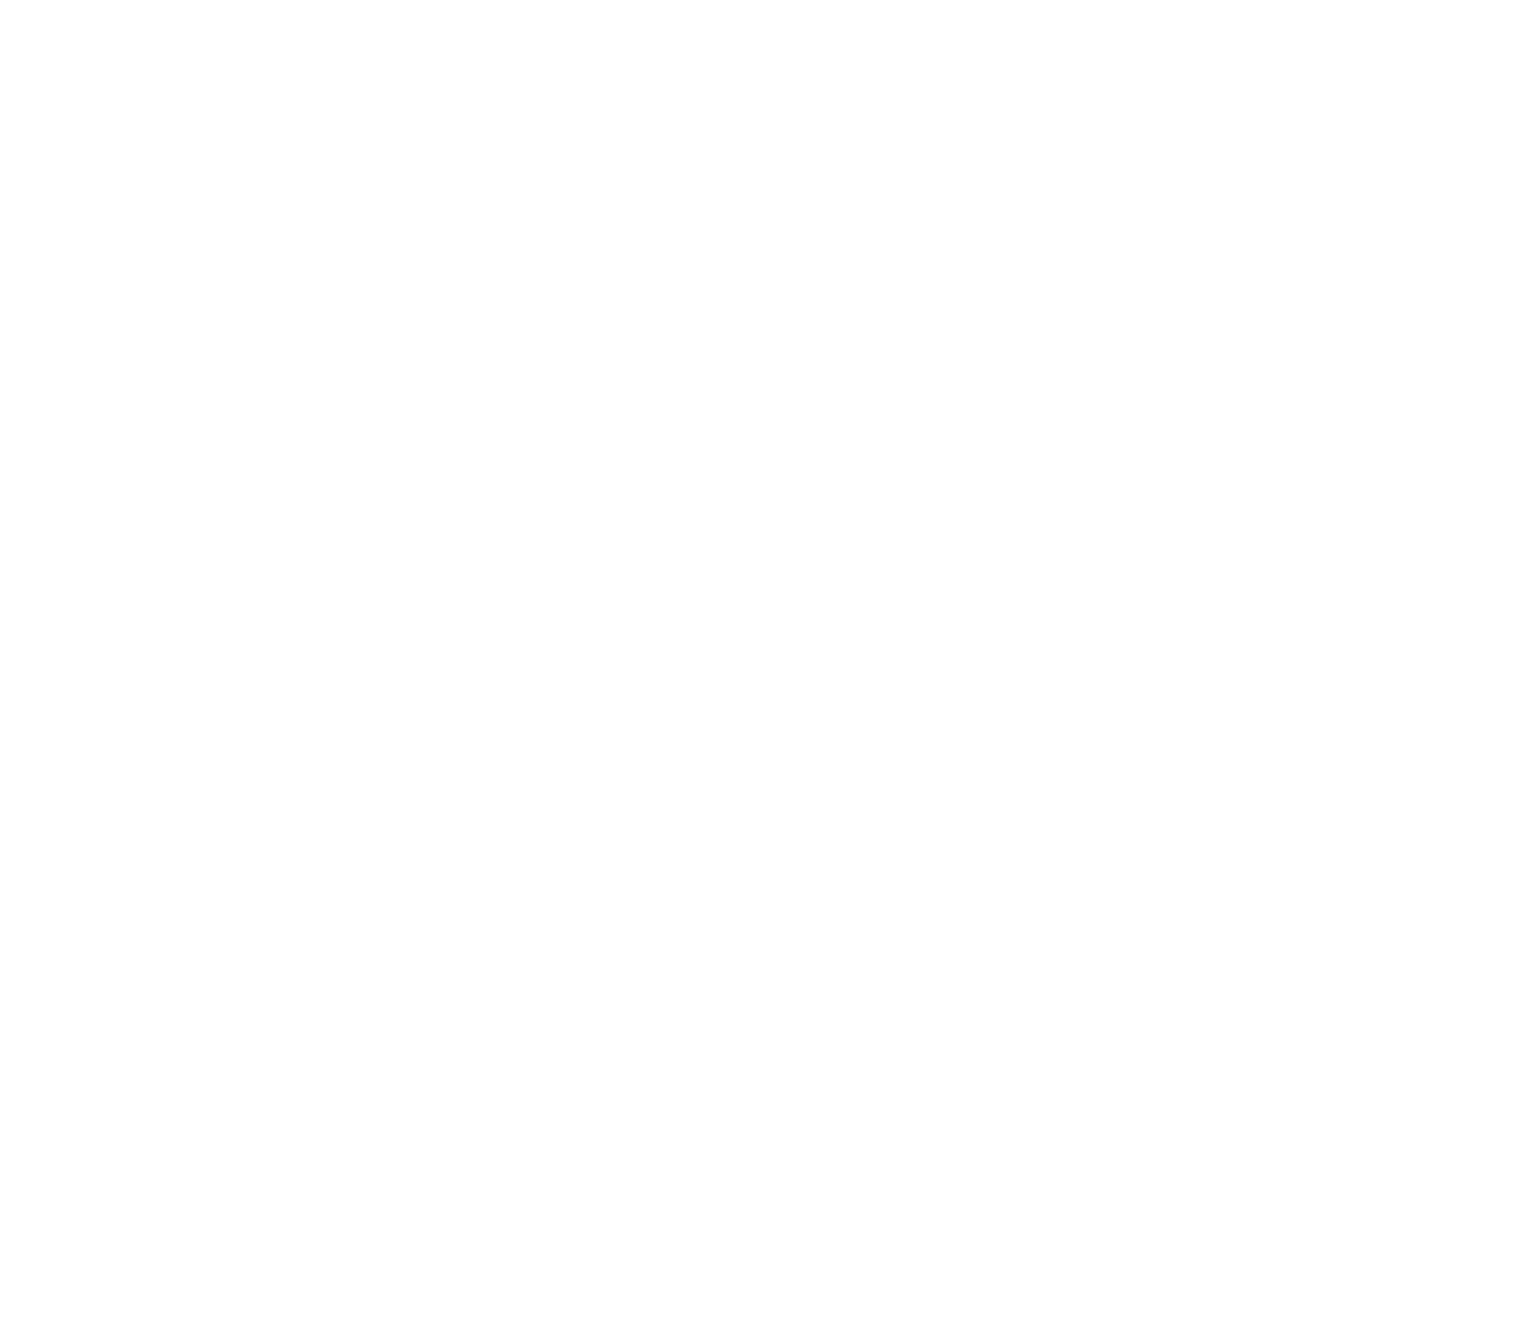 Eastern Bankshares logo for dark backgrounds (transparent PNG)